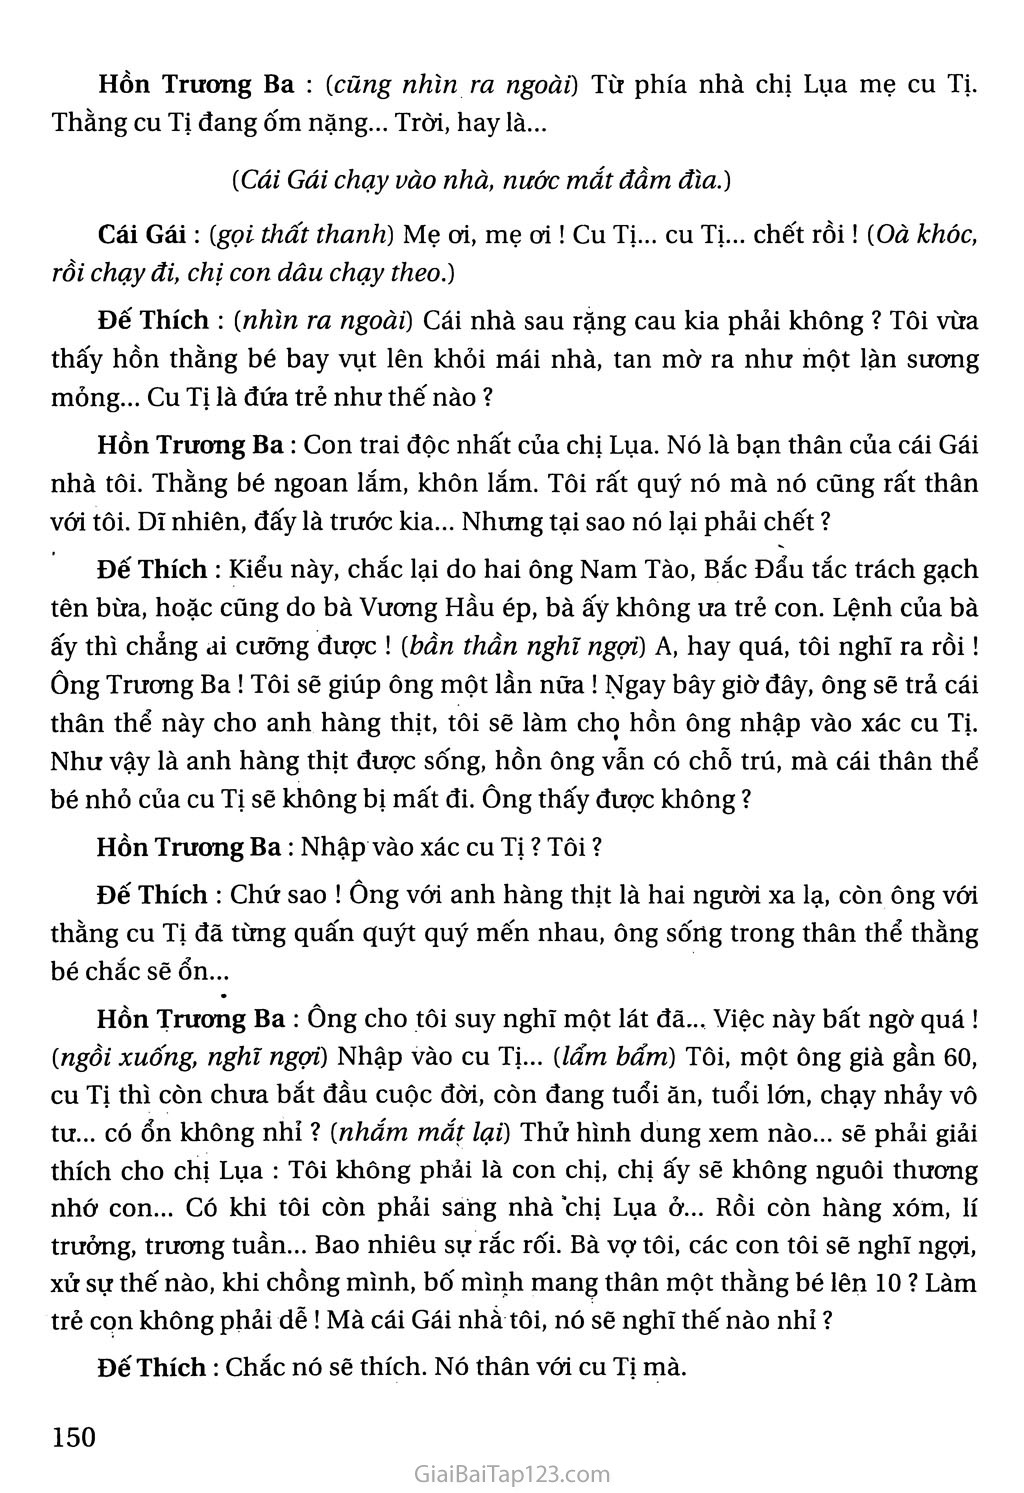 Hồn Trương Ba, da hàng thịt (trích) trang 9